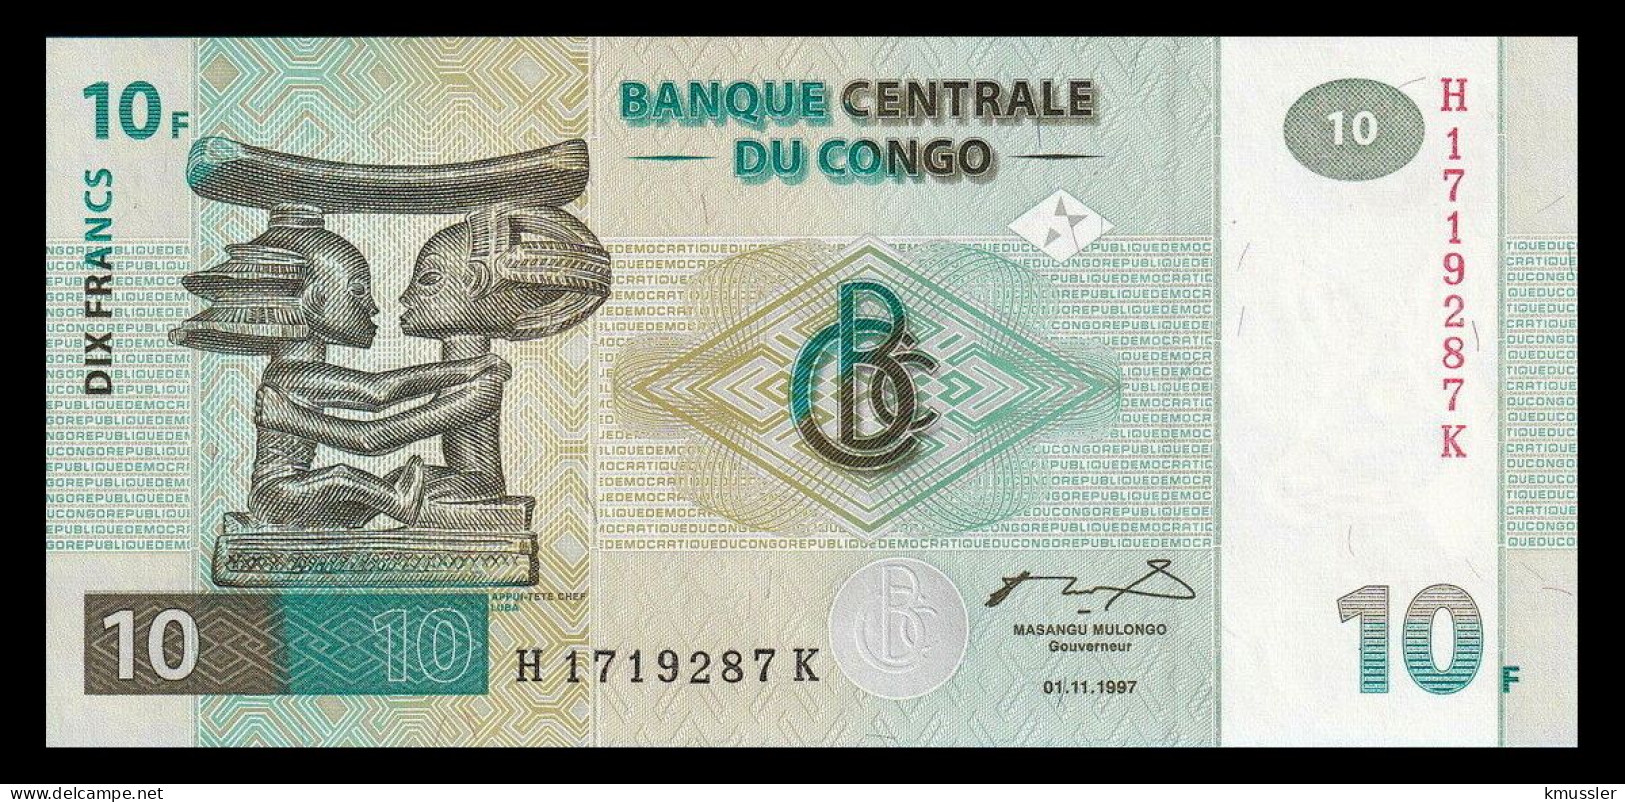 # # # Banknote Kongo (Congo) 10 Francs 1997 (P-87B) 1997 HdM UNC # # # - République Démocratique Du Congo & Zaïre